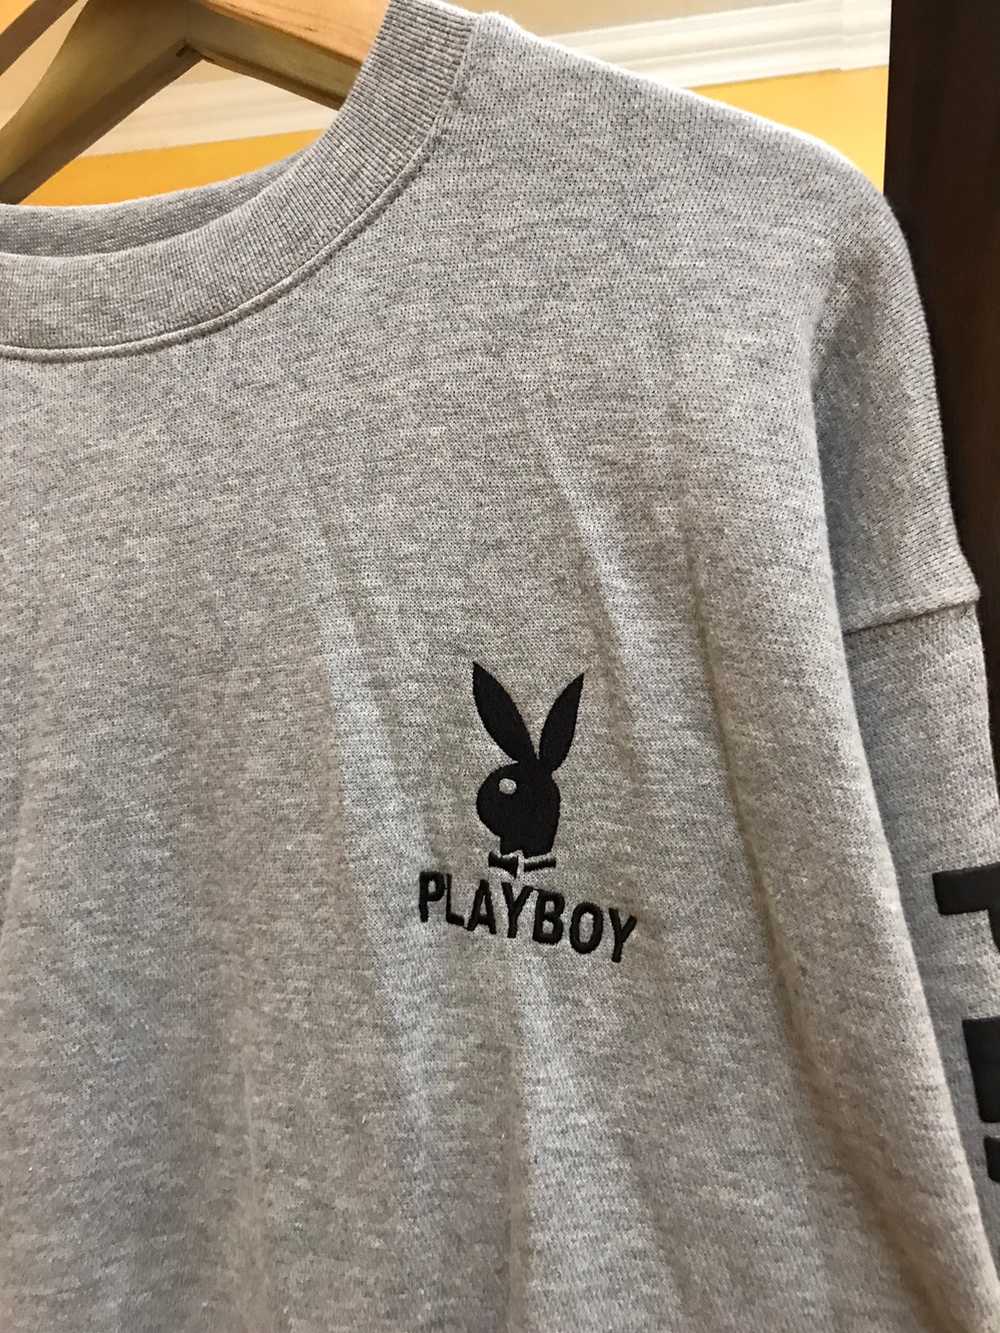 Playboy - Playboy Sweatshirt big Logo - image 2